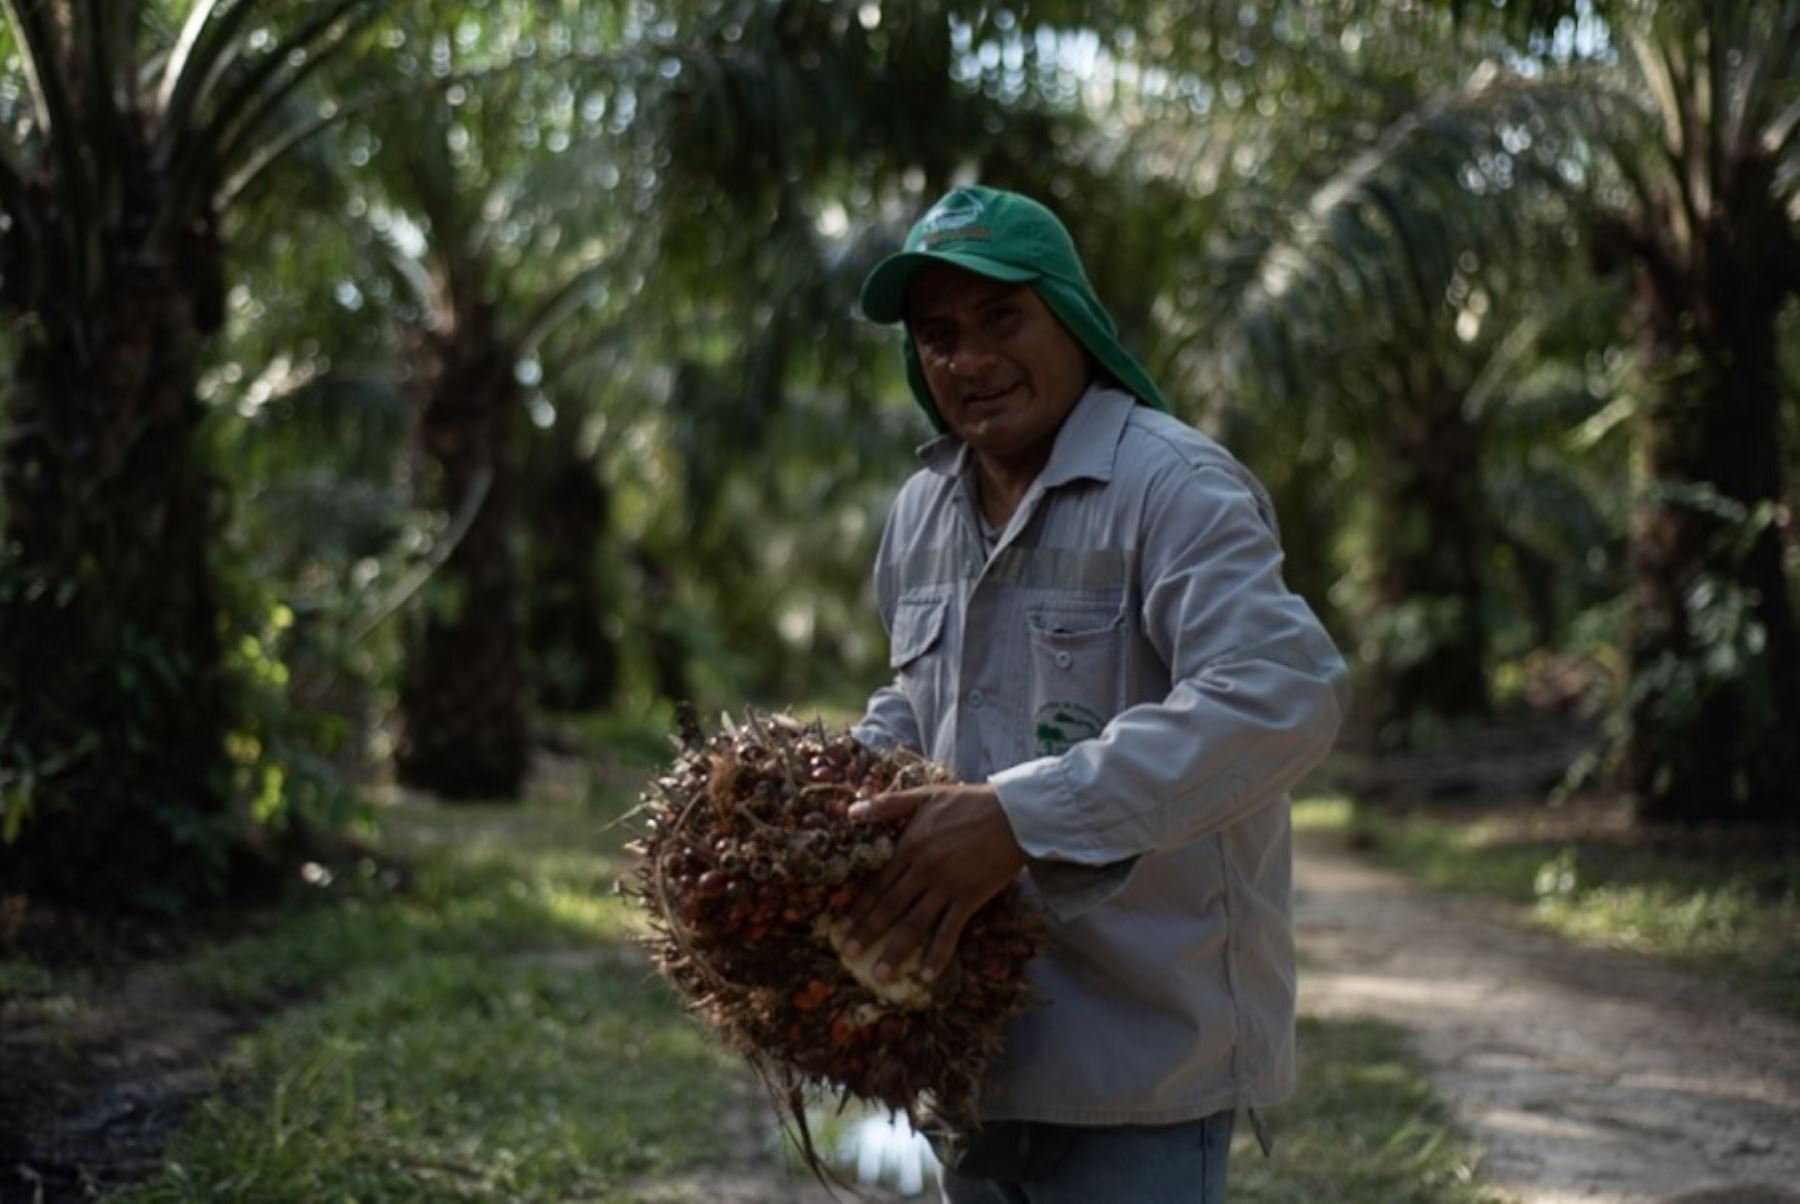 Producir palma aceitera sin deforestación es la apuesta de más de 500 pequeños productores de las regiones Huánuco y Ucayali, quienes recibirán capacitación y asistencia técnica para adoptar prácticas socioambientales sostenibles, gracias al Proyecto Paisajes Productivos Sostenibles en la Amazonía peruana. Foto: Jazmín Ramírez/PNUD Perú.